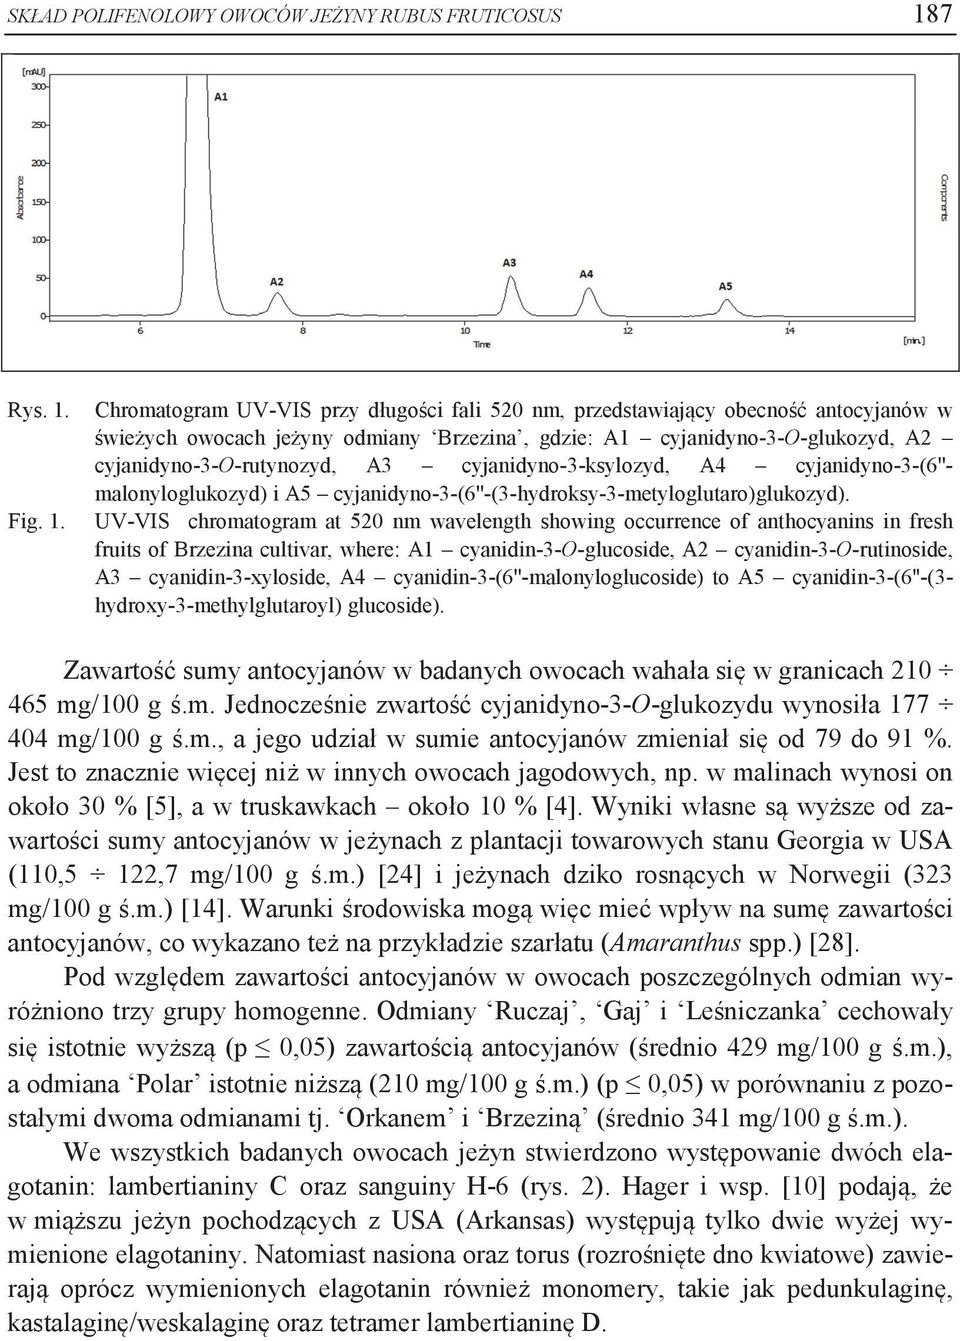 Chromatogram UV-VIS przy długości fali 520 nm, przedstawiający obecność antocyjanów w świeżych owocach jeżyny odmiany Brzezina, gdzie: A1 cyjanidyno-3-o-glukozyd, A2 cyjanidyno-3-o-rutynozyd, A3